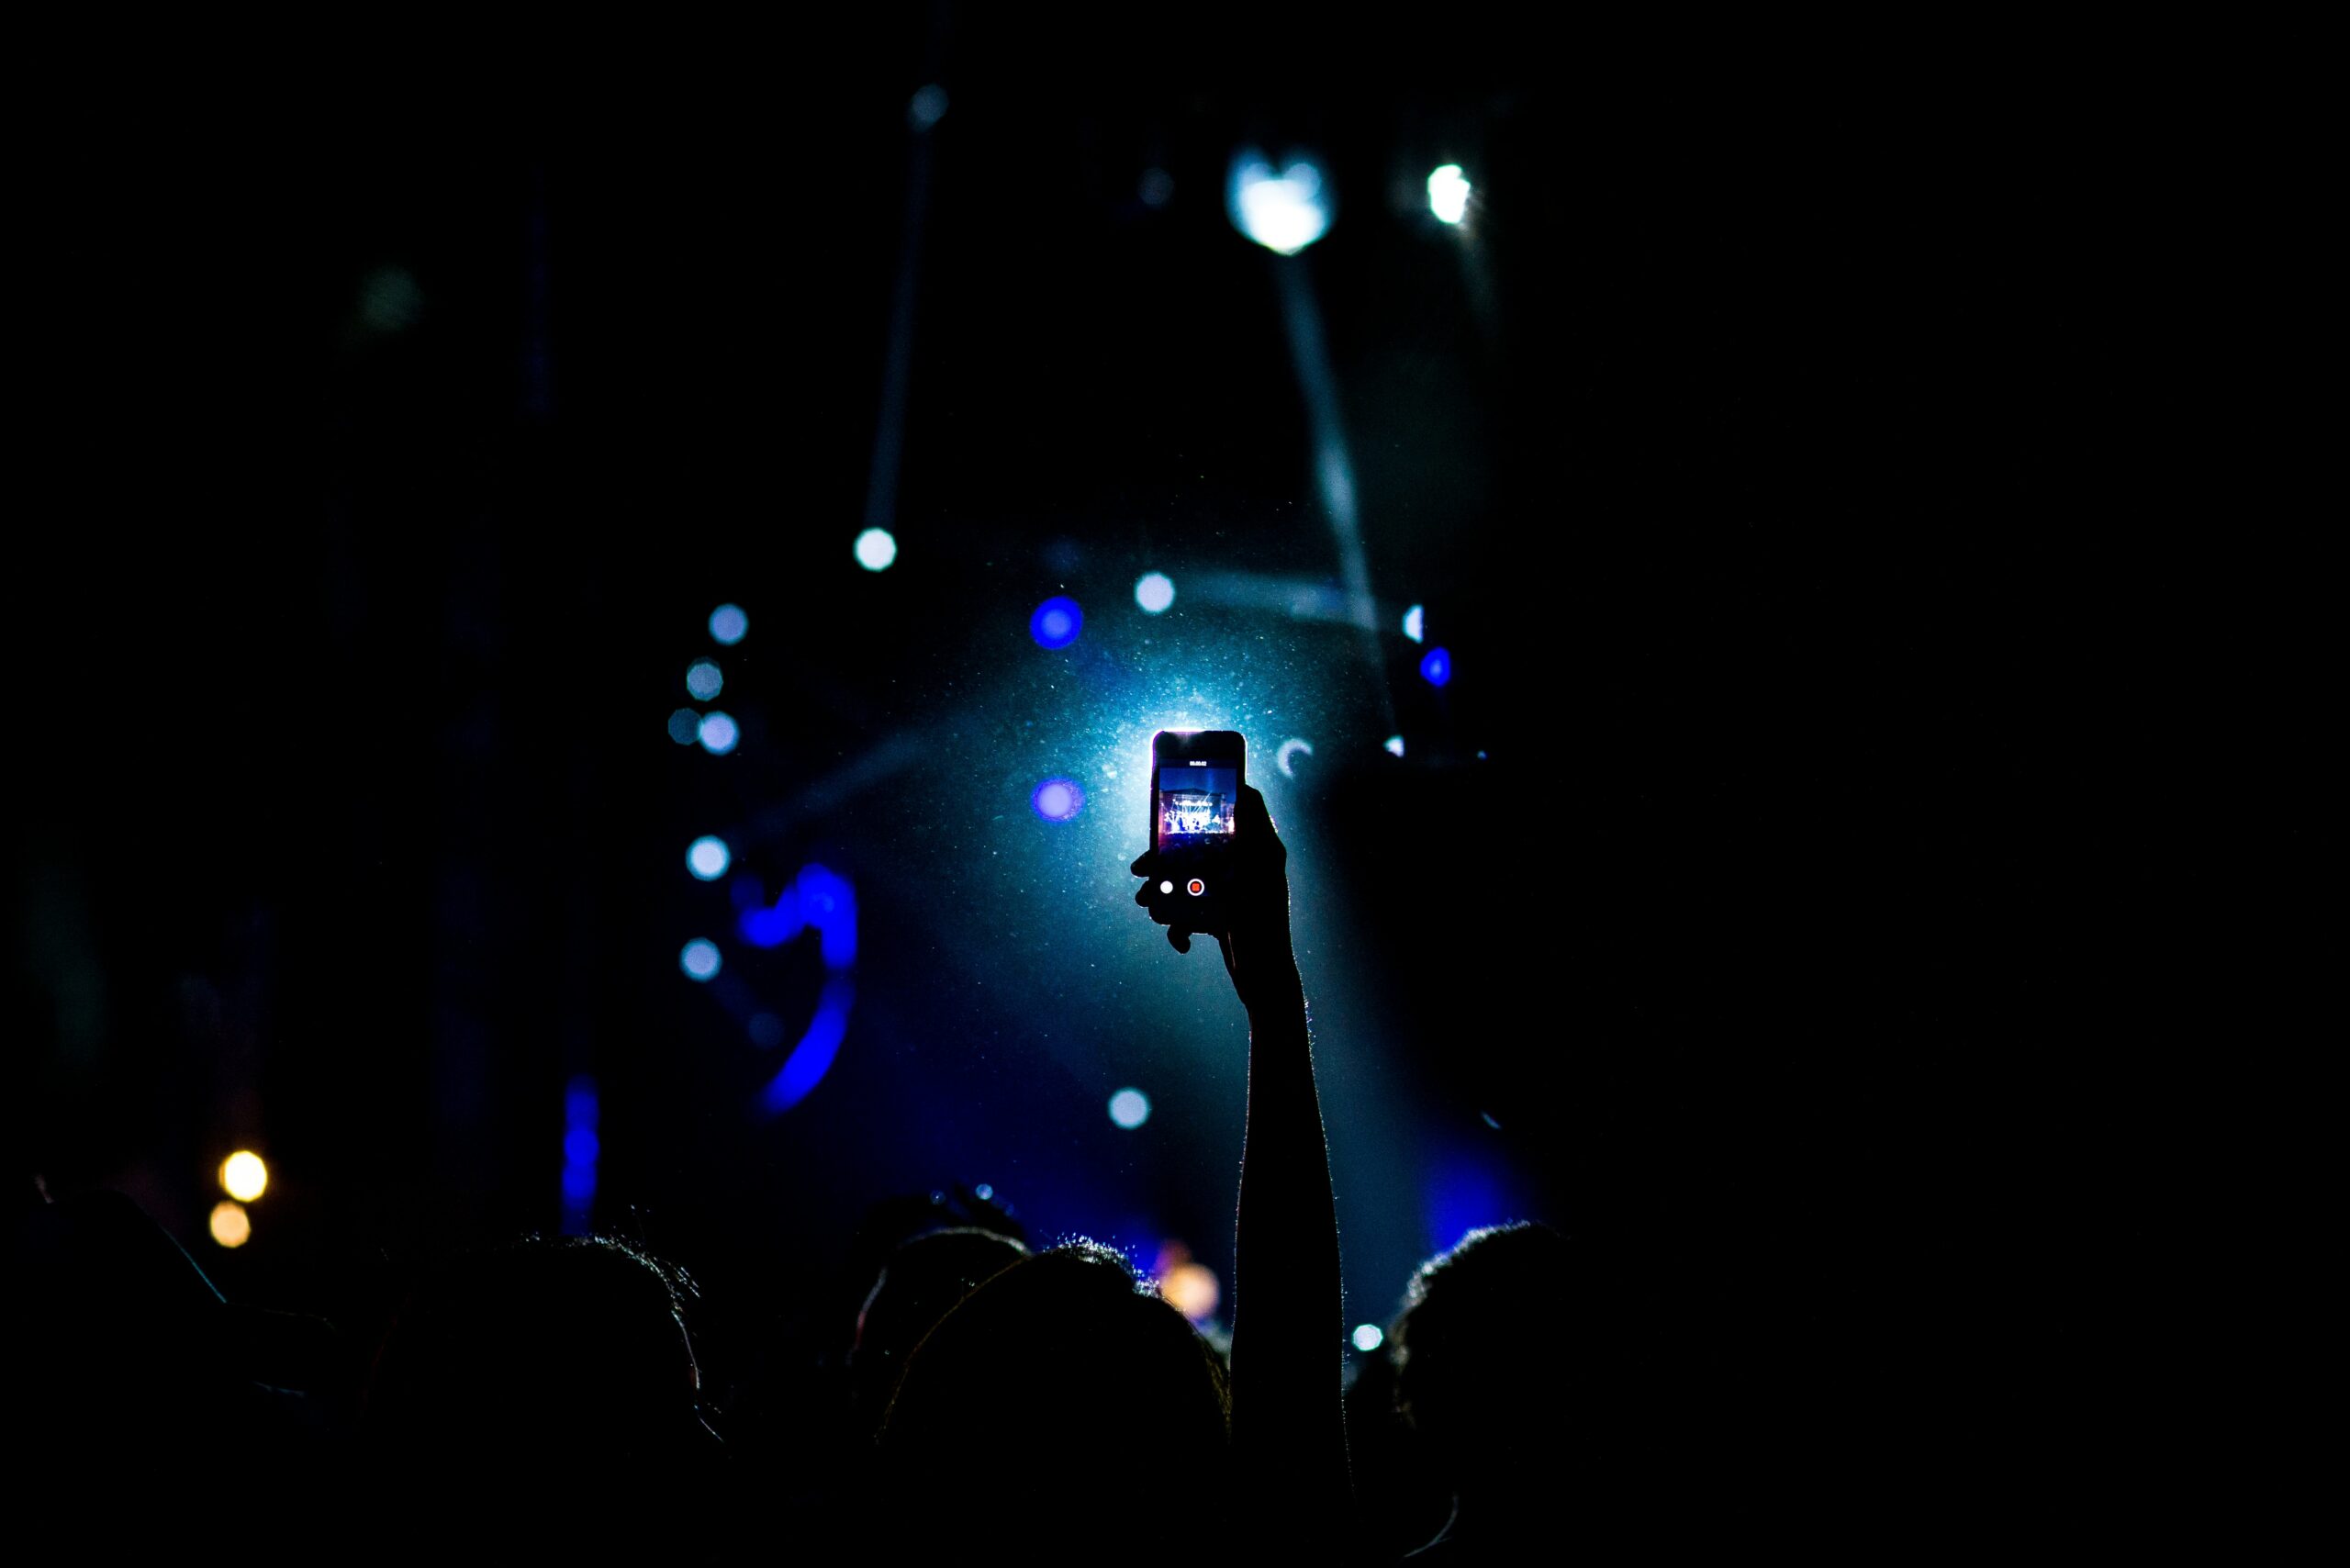 Celular na mão a noite tirando foto de um show. Representa chip celular México